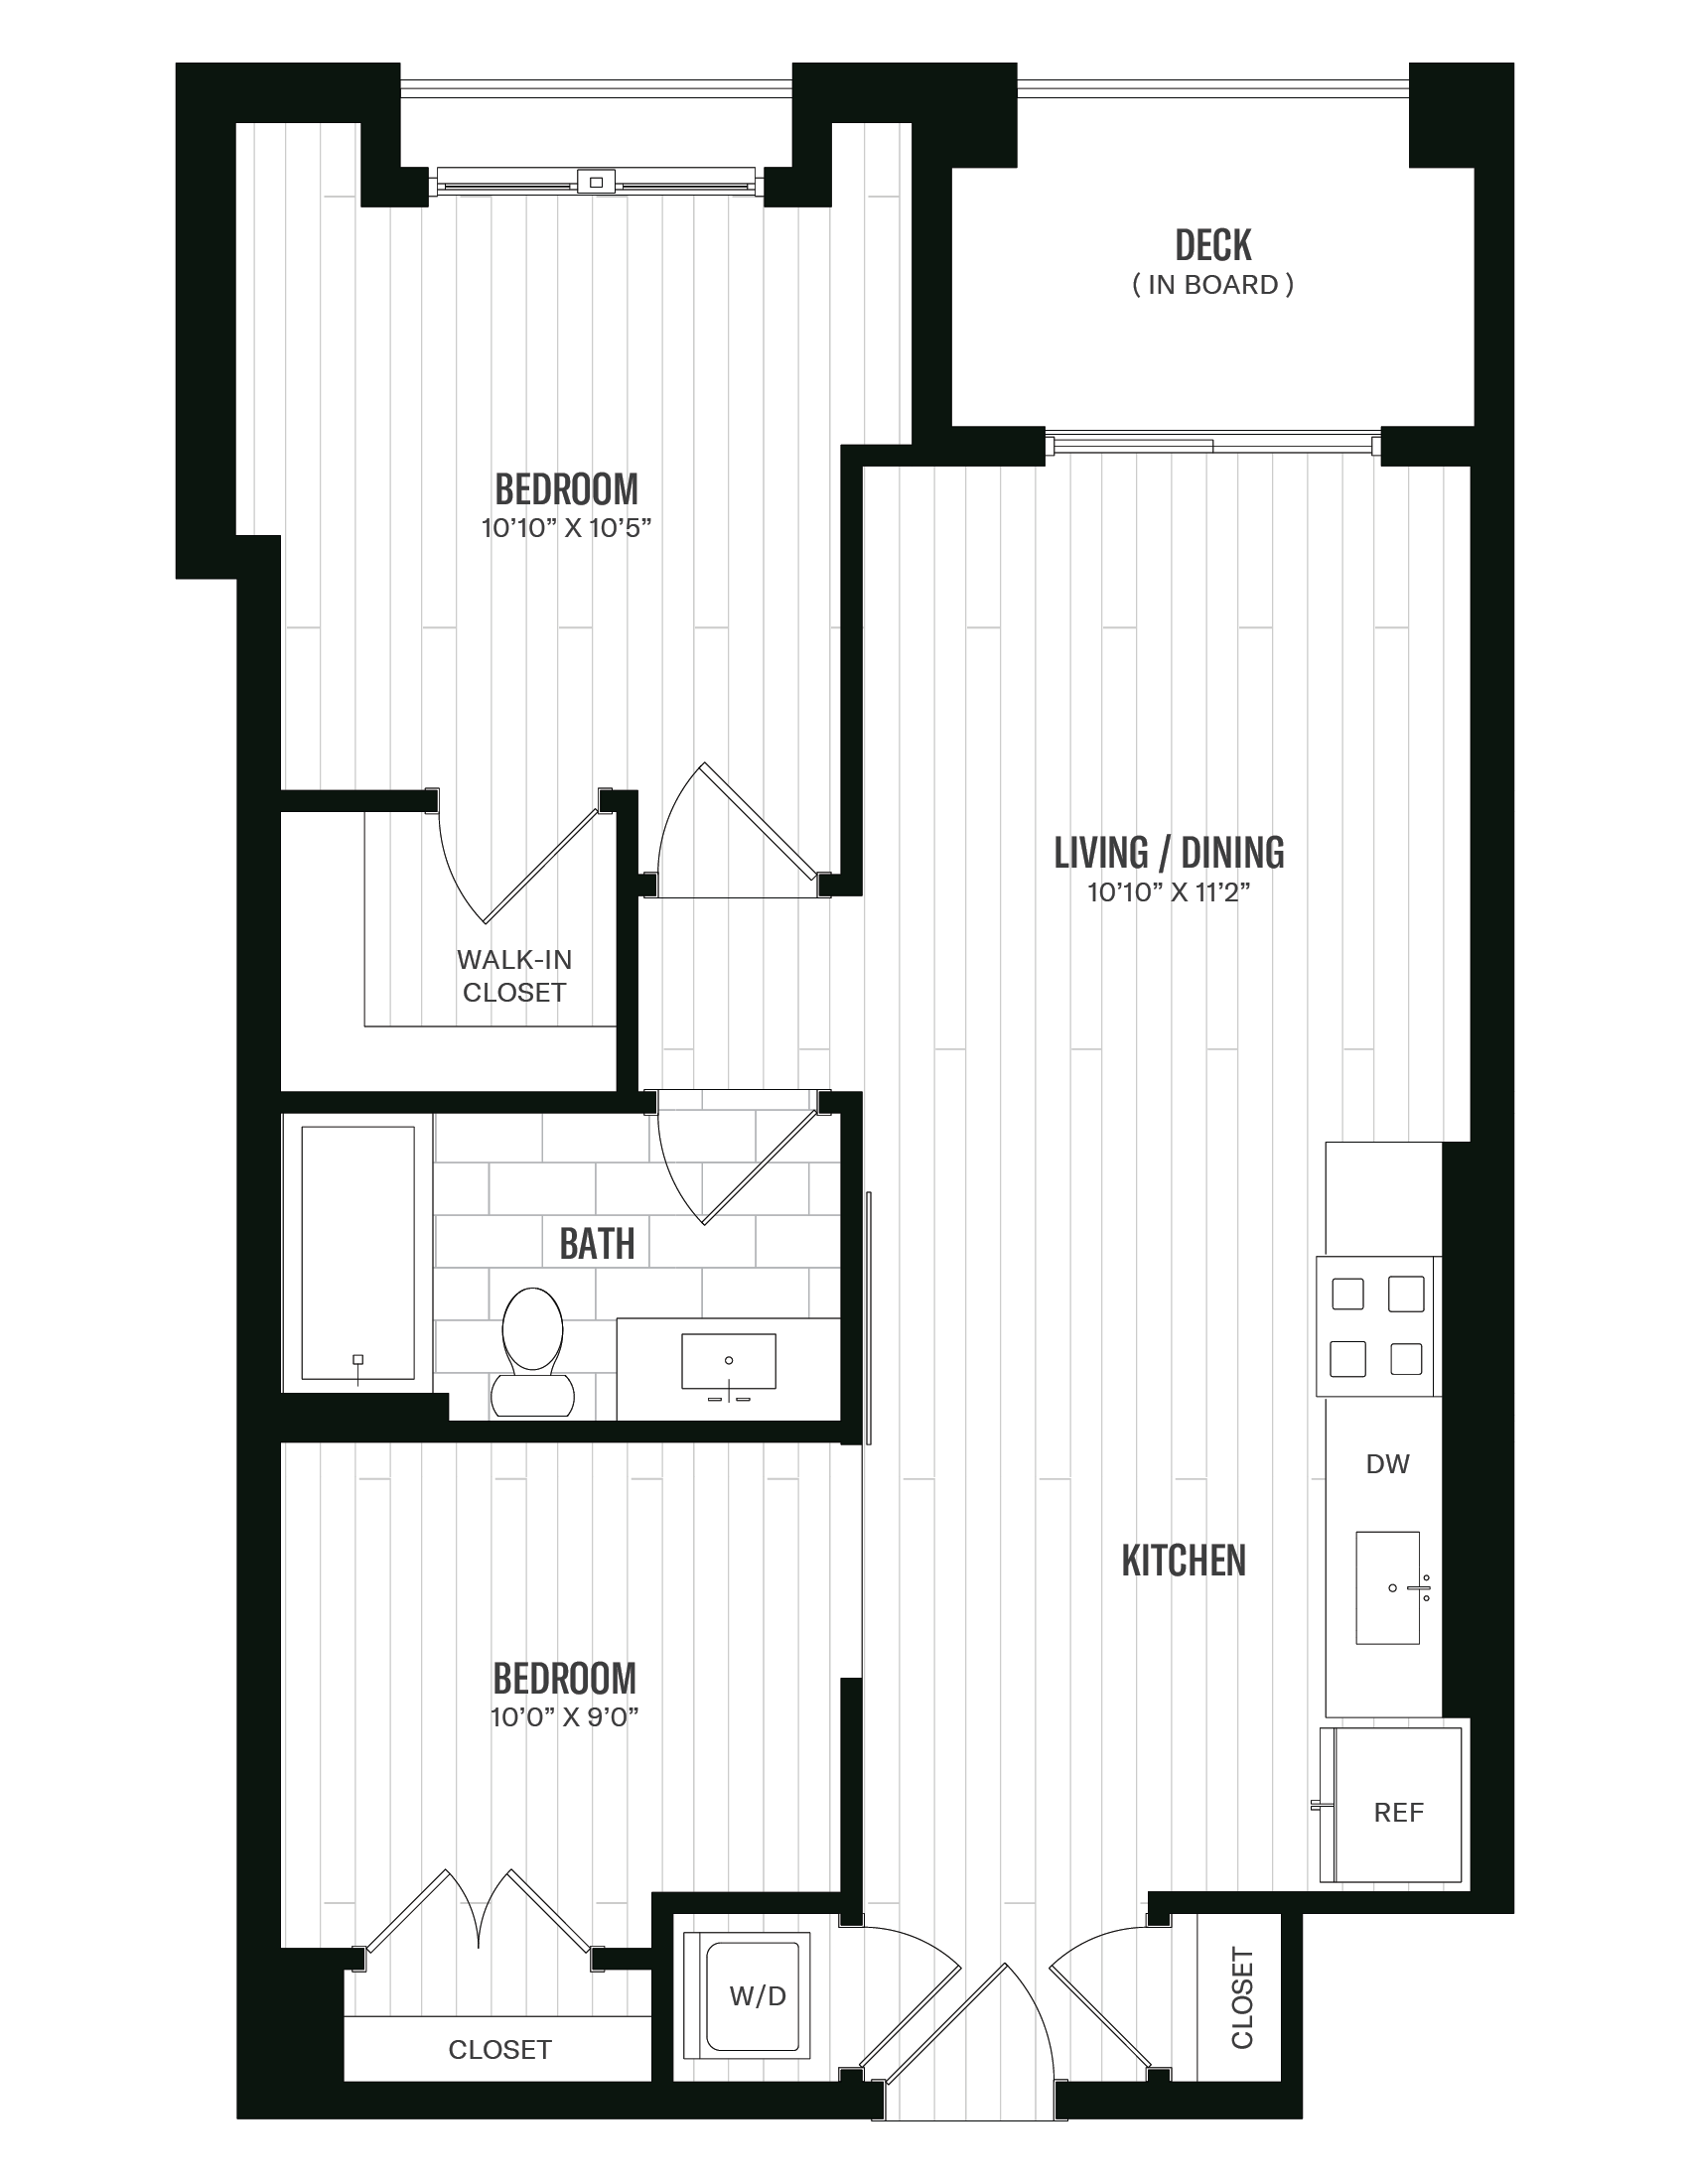 Floorplan image of unit 446